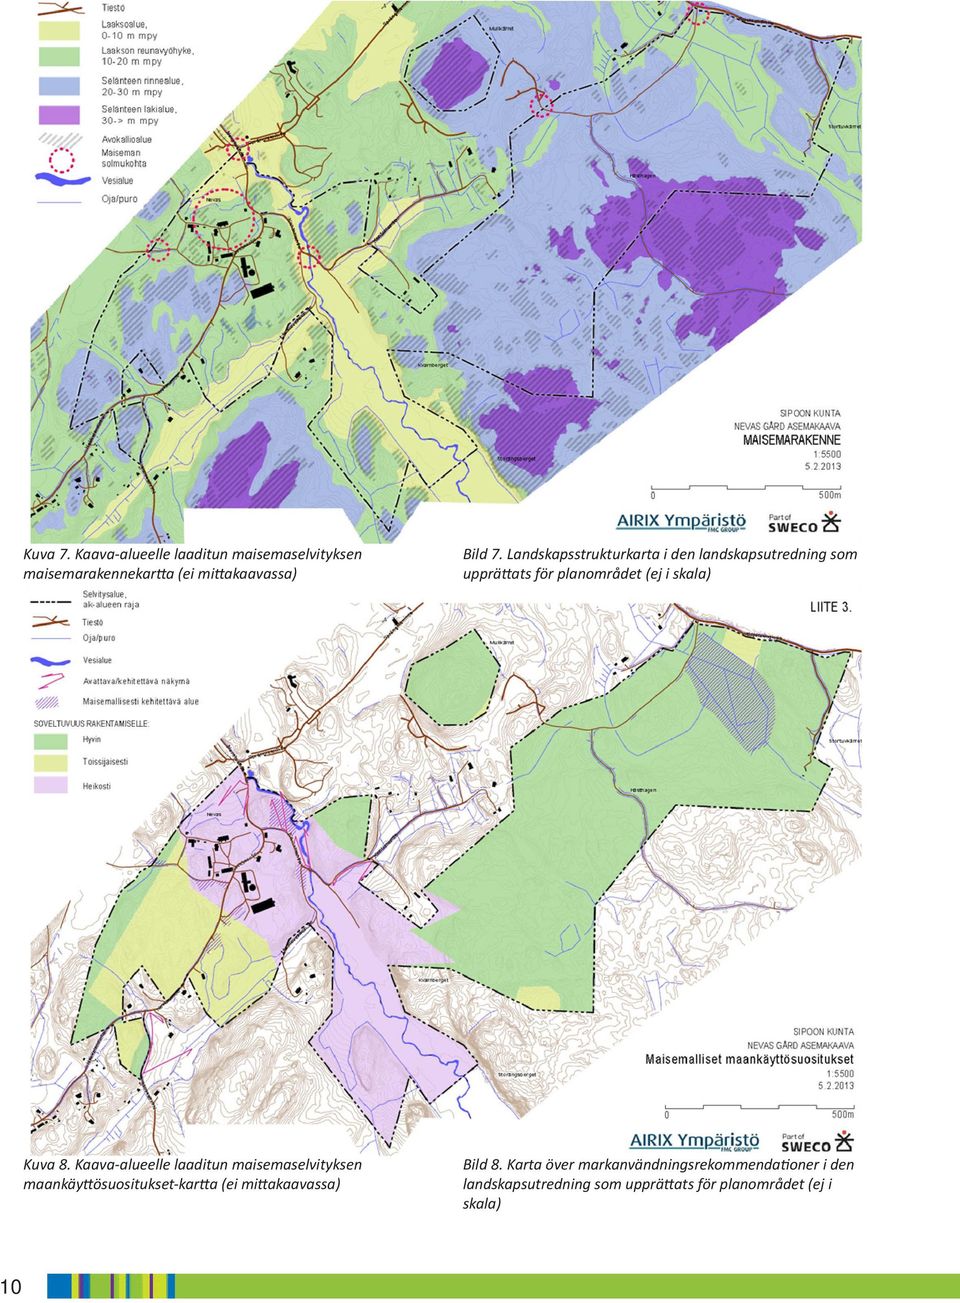 Kaava-alueelle laaditun maisemaselvityksen maankäyttösuositukset-kartta (ei mittakaavassa) Bild 8.